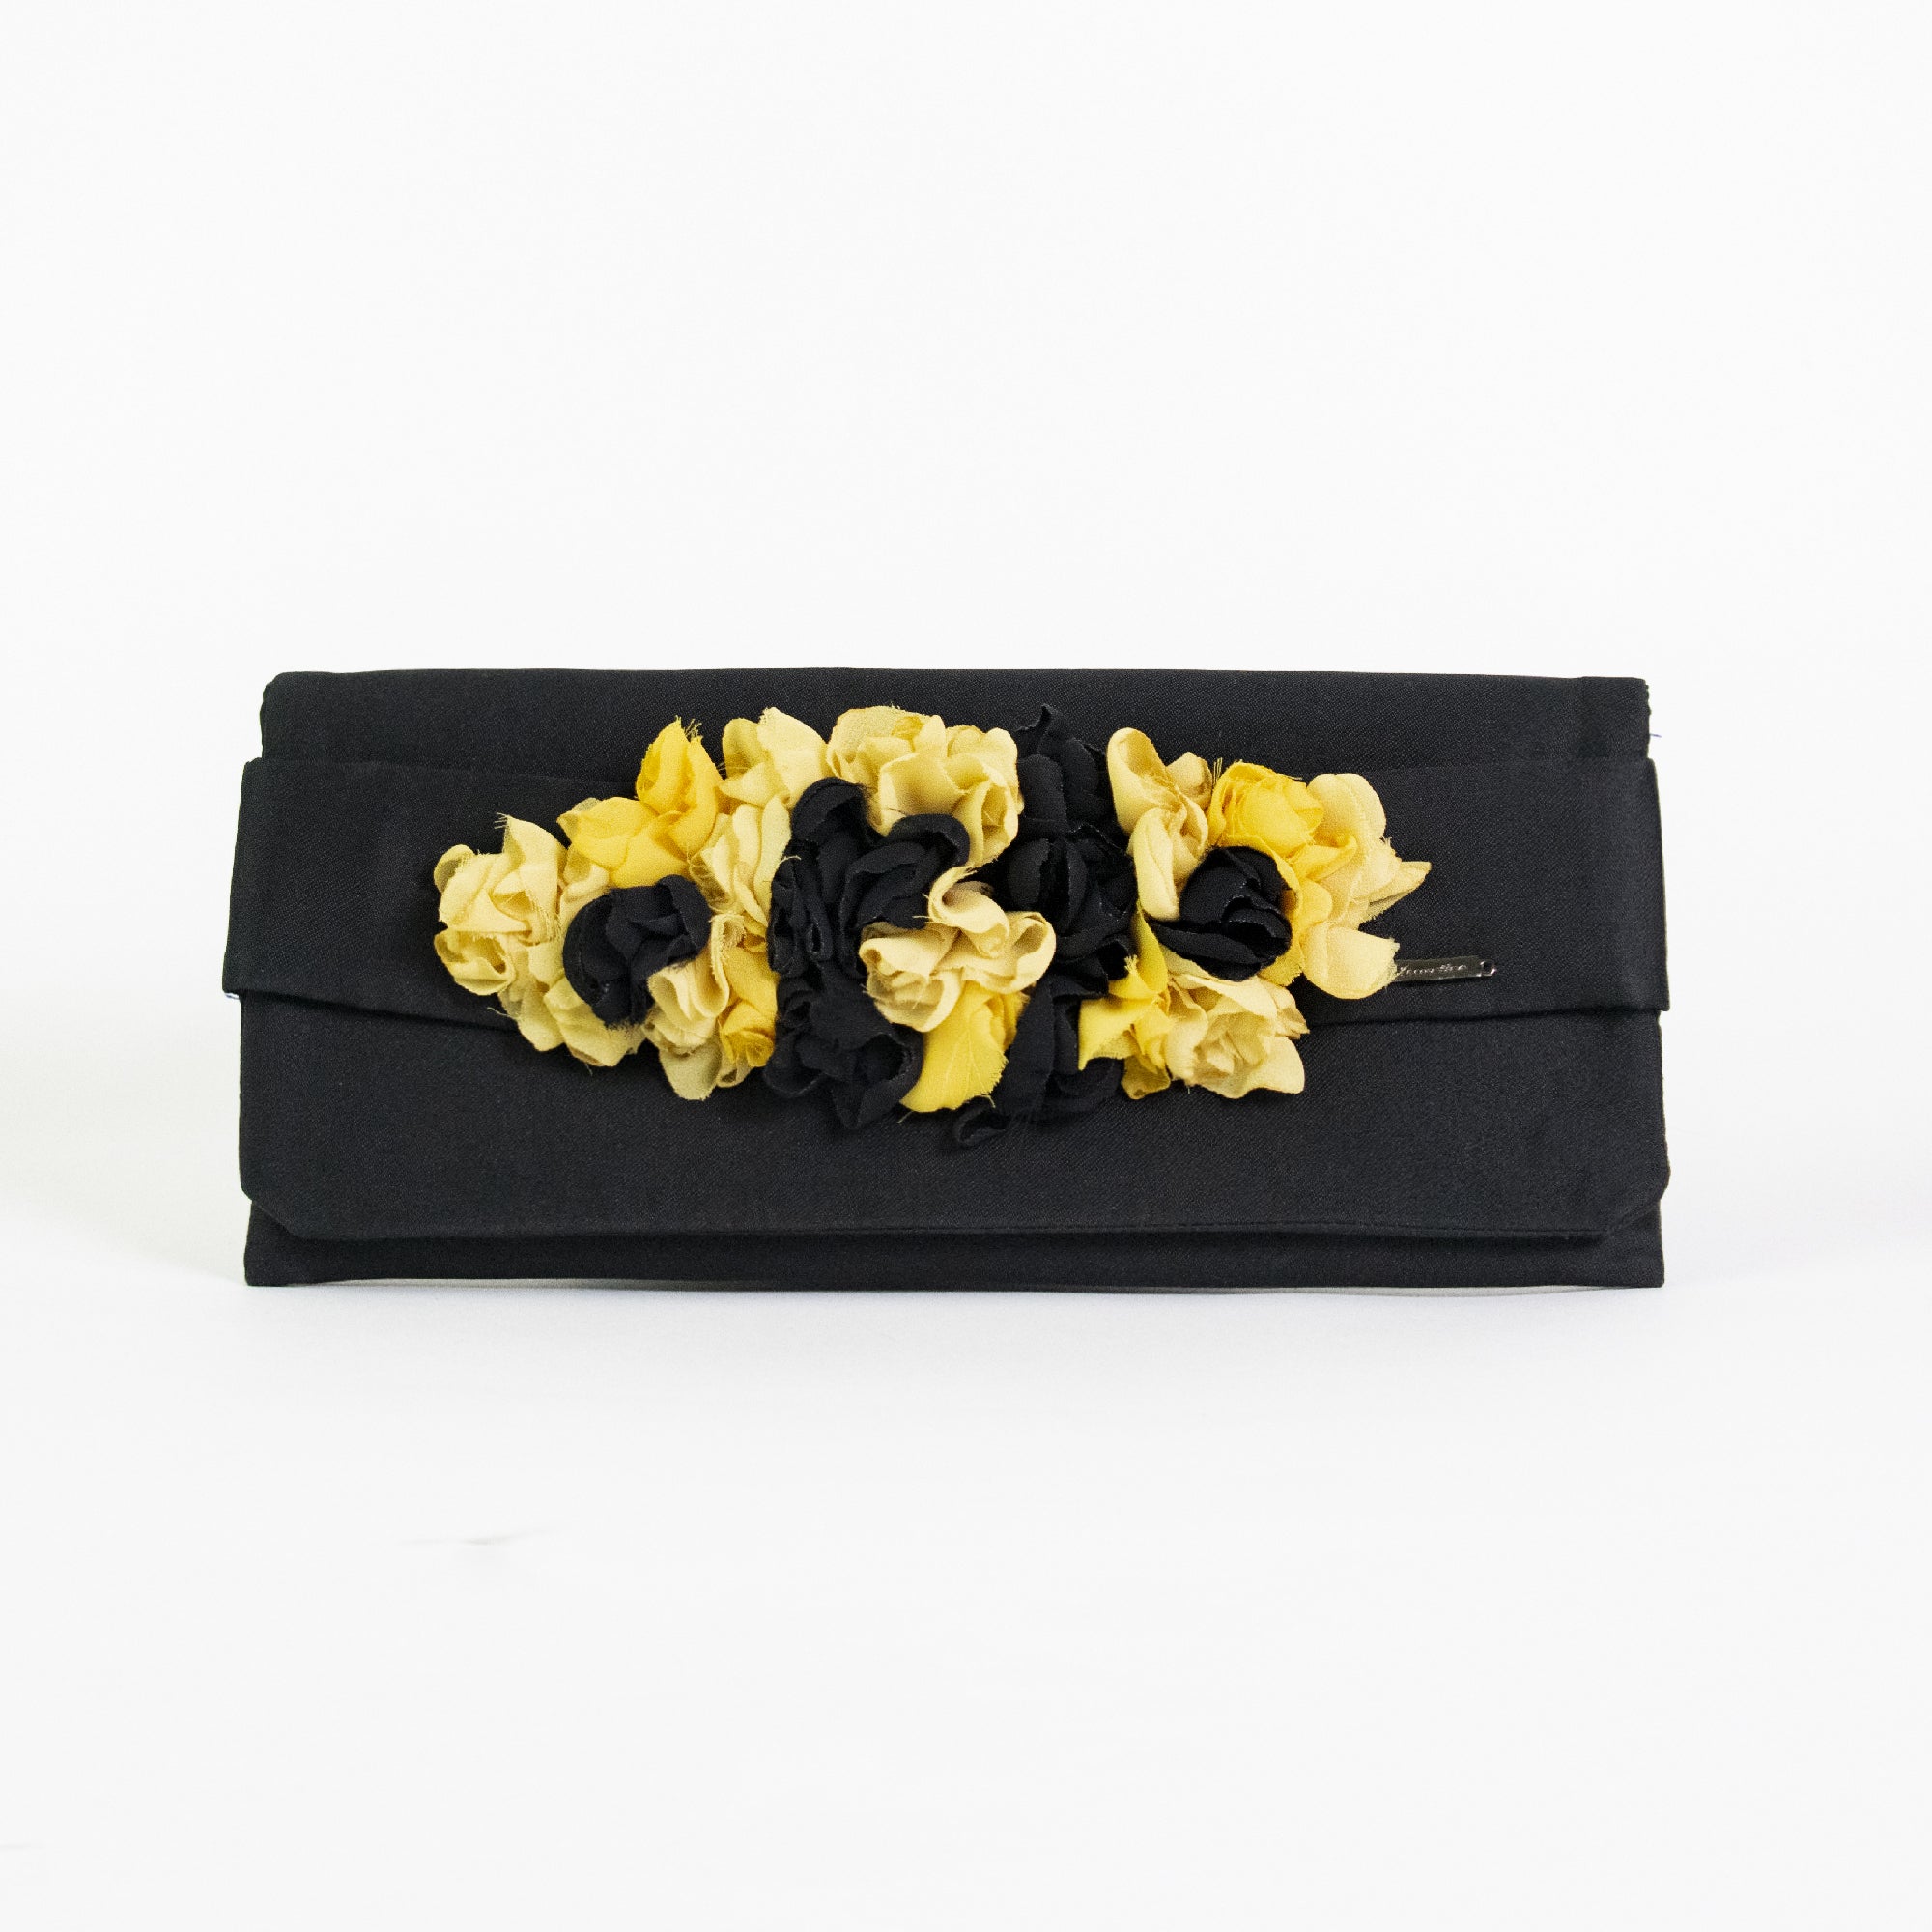 Pochette nera con fiori bicolore